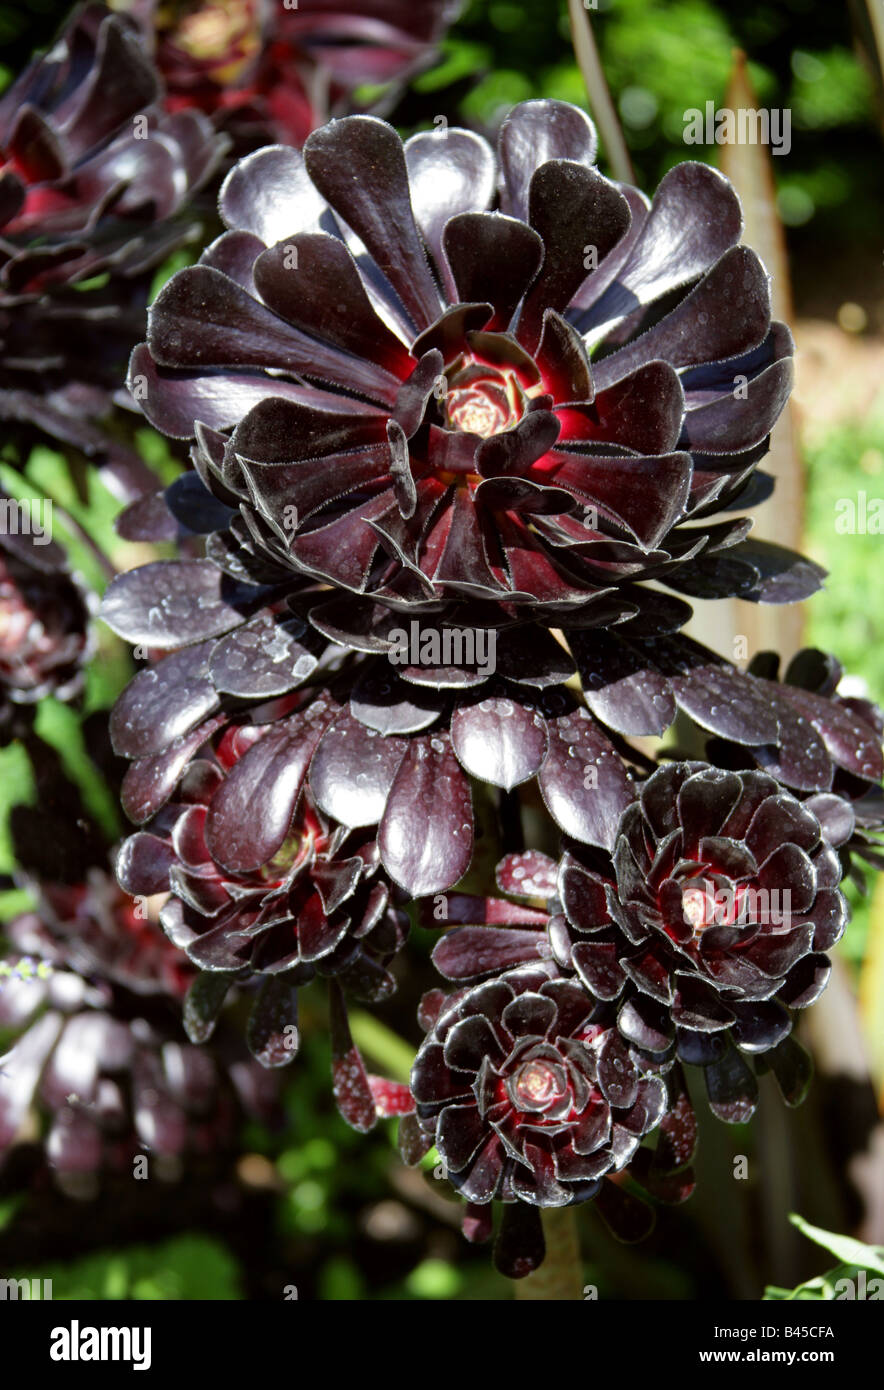 Purple Crest Aeonium or Black Tree Aeonium, Aeonium arboreum var atropurpureum, Morocco, North Africa Stock Photo